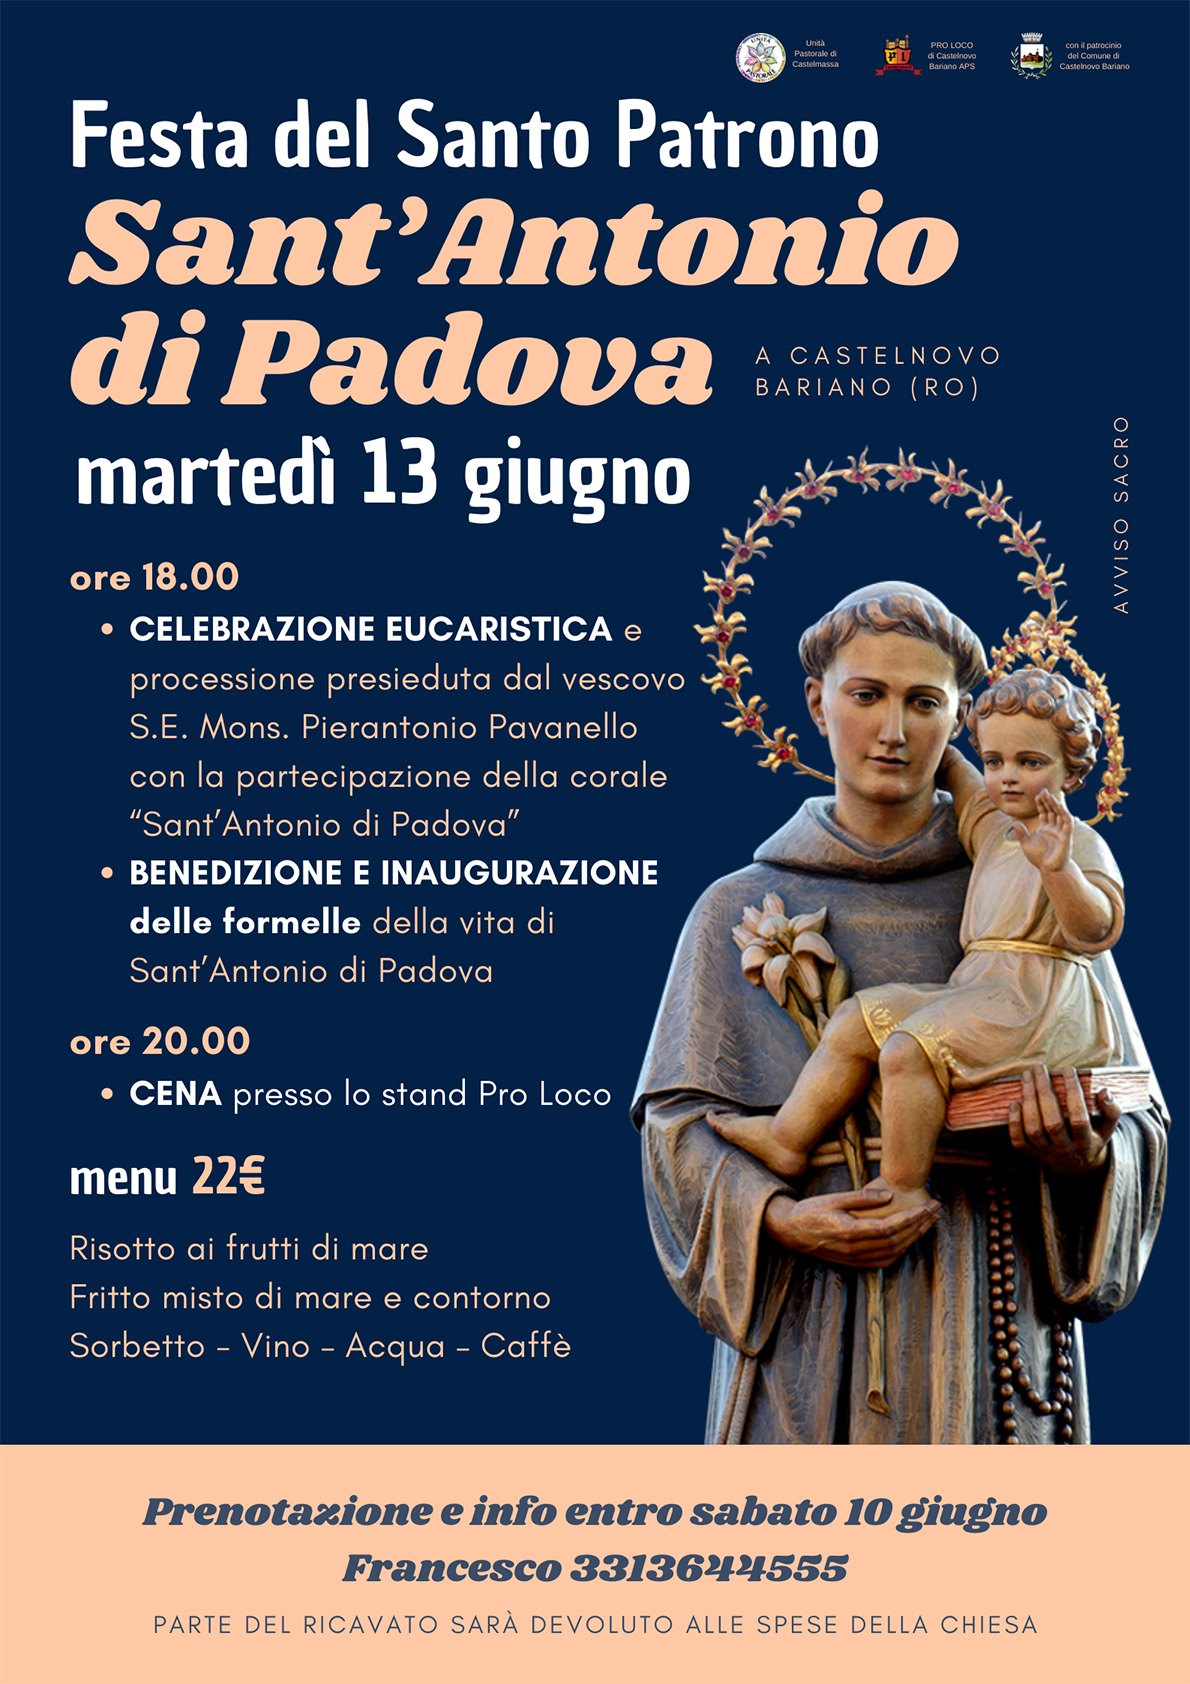 Festa del Santo Patrono Sant'Antonio di Padova